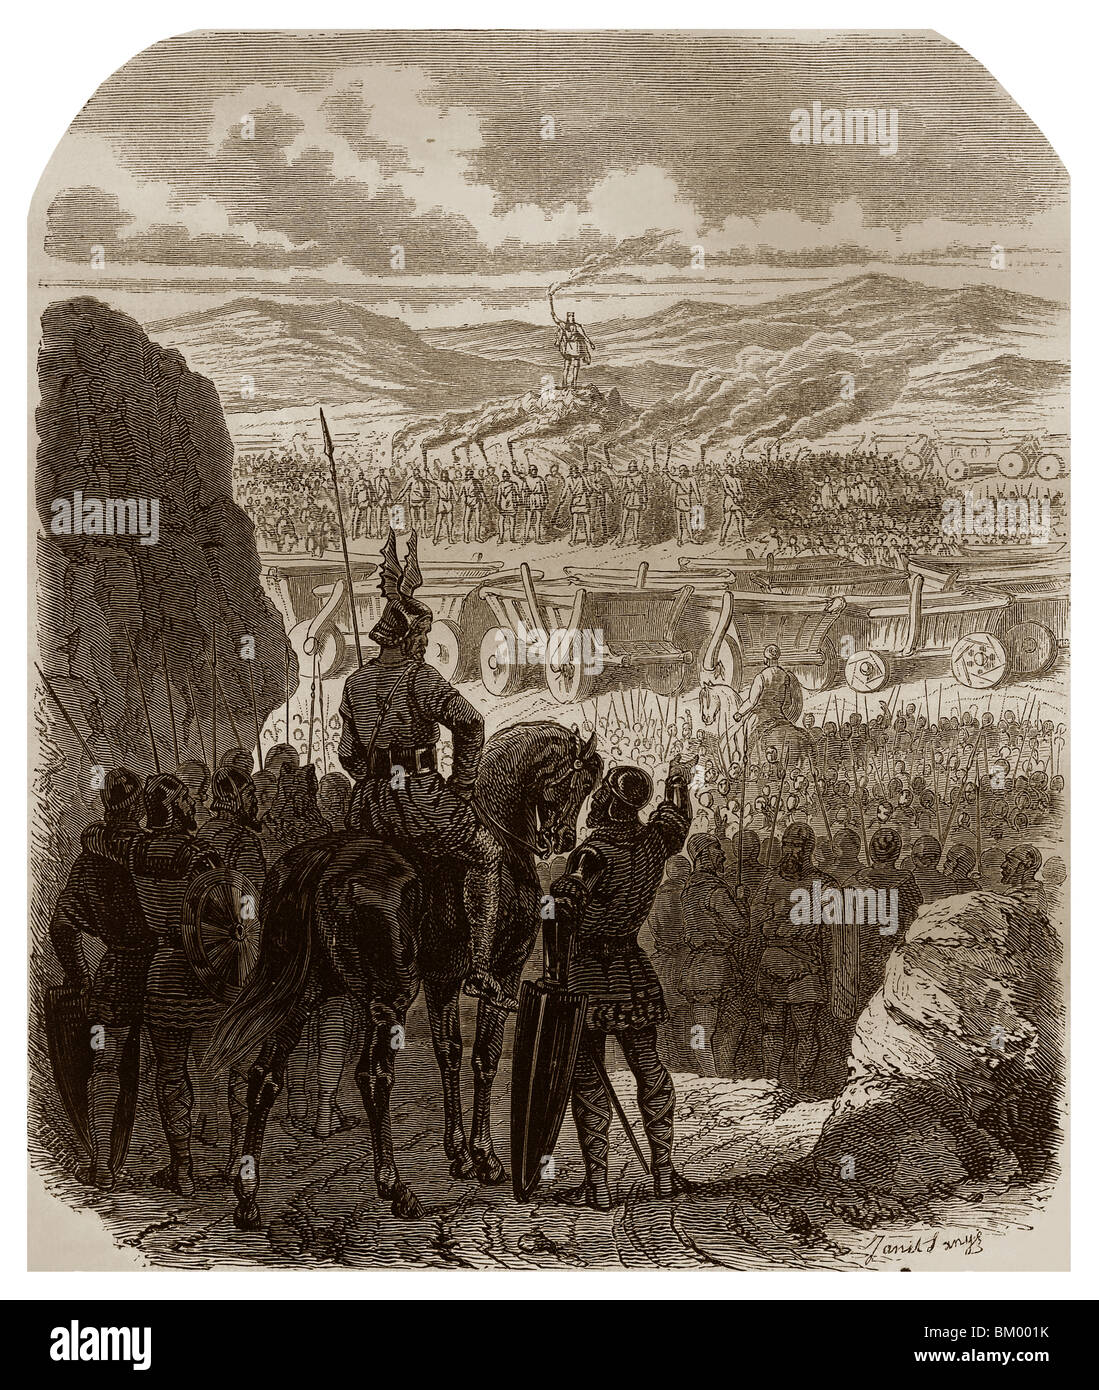 En 451, autour de Châlons-sur-Marne, les Huns formé sur leur camp un bûcher composé par les selles et Attila est situé sur le dessus. Banque D'Images